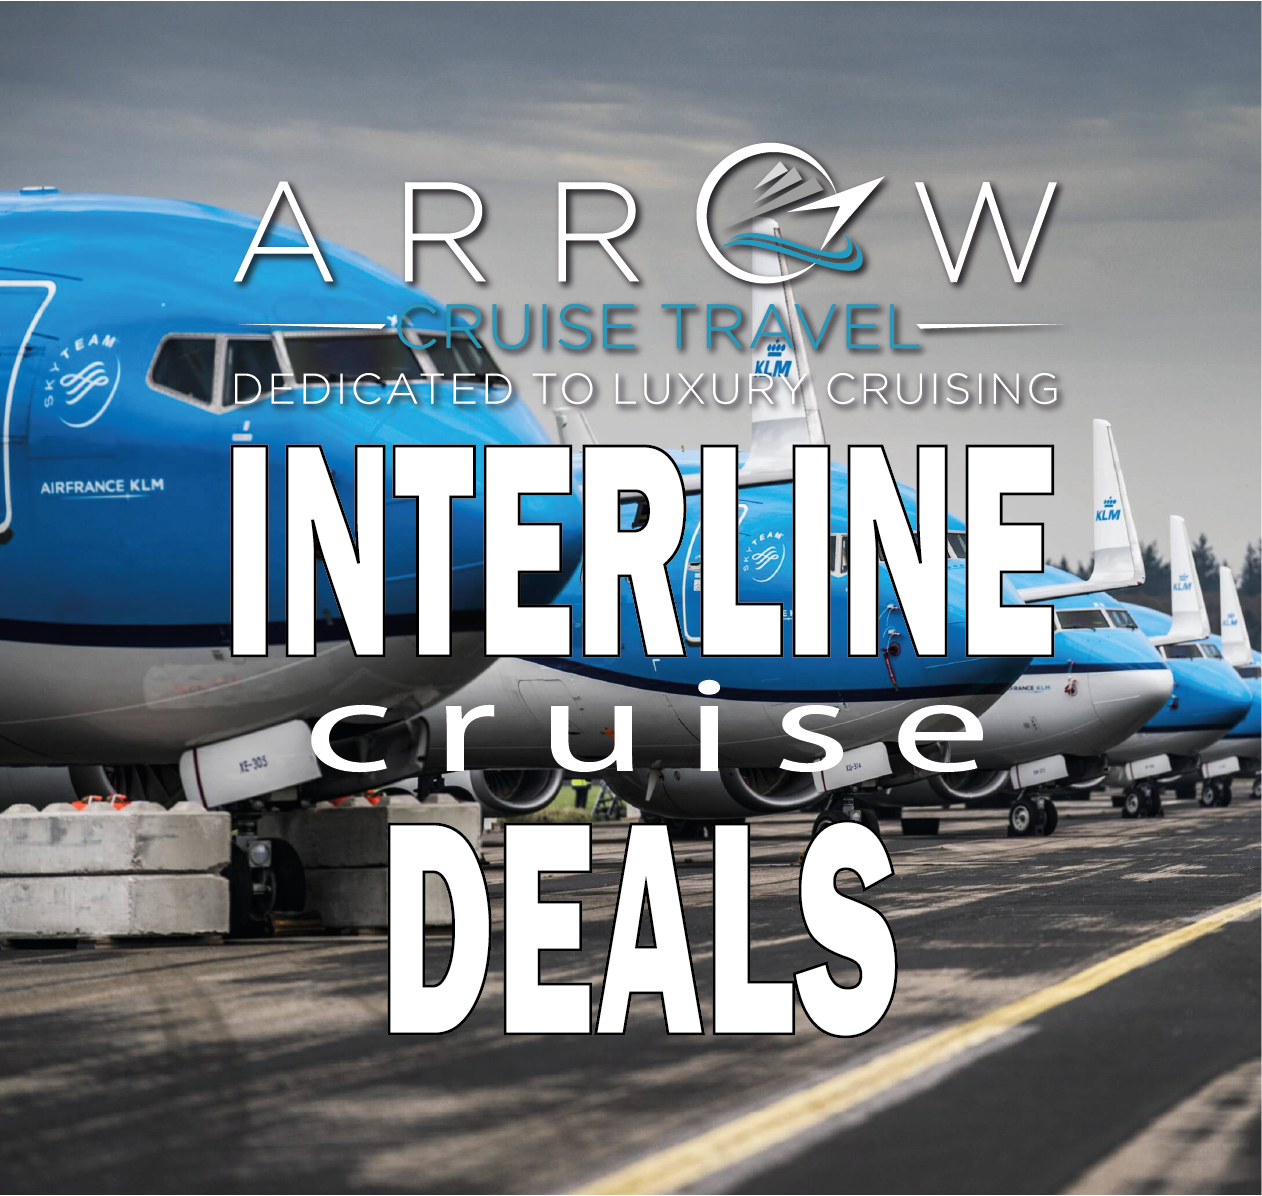 interline travel deals